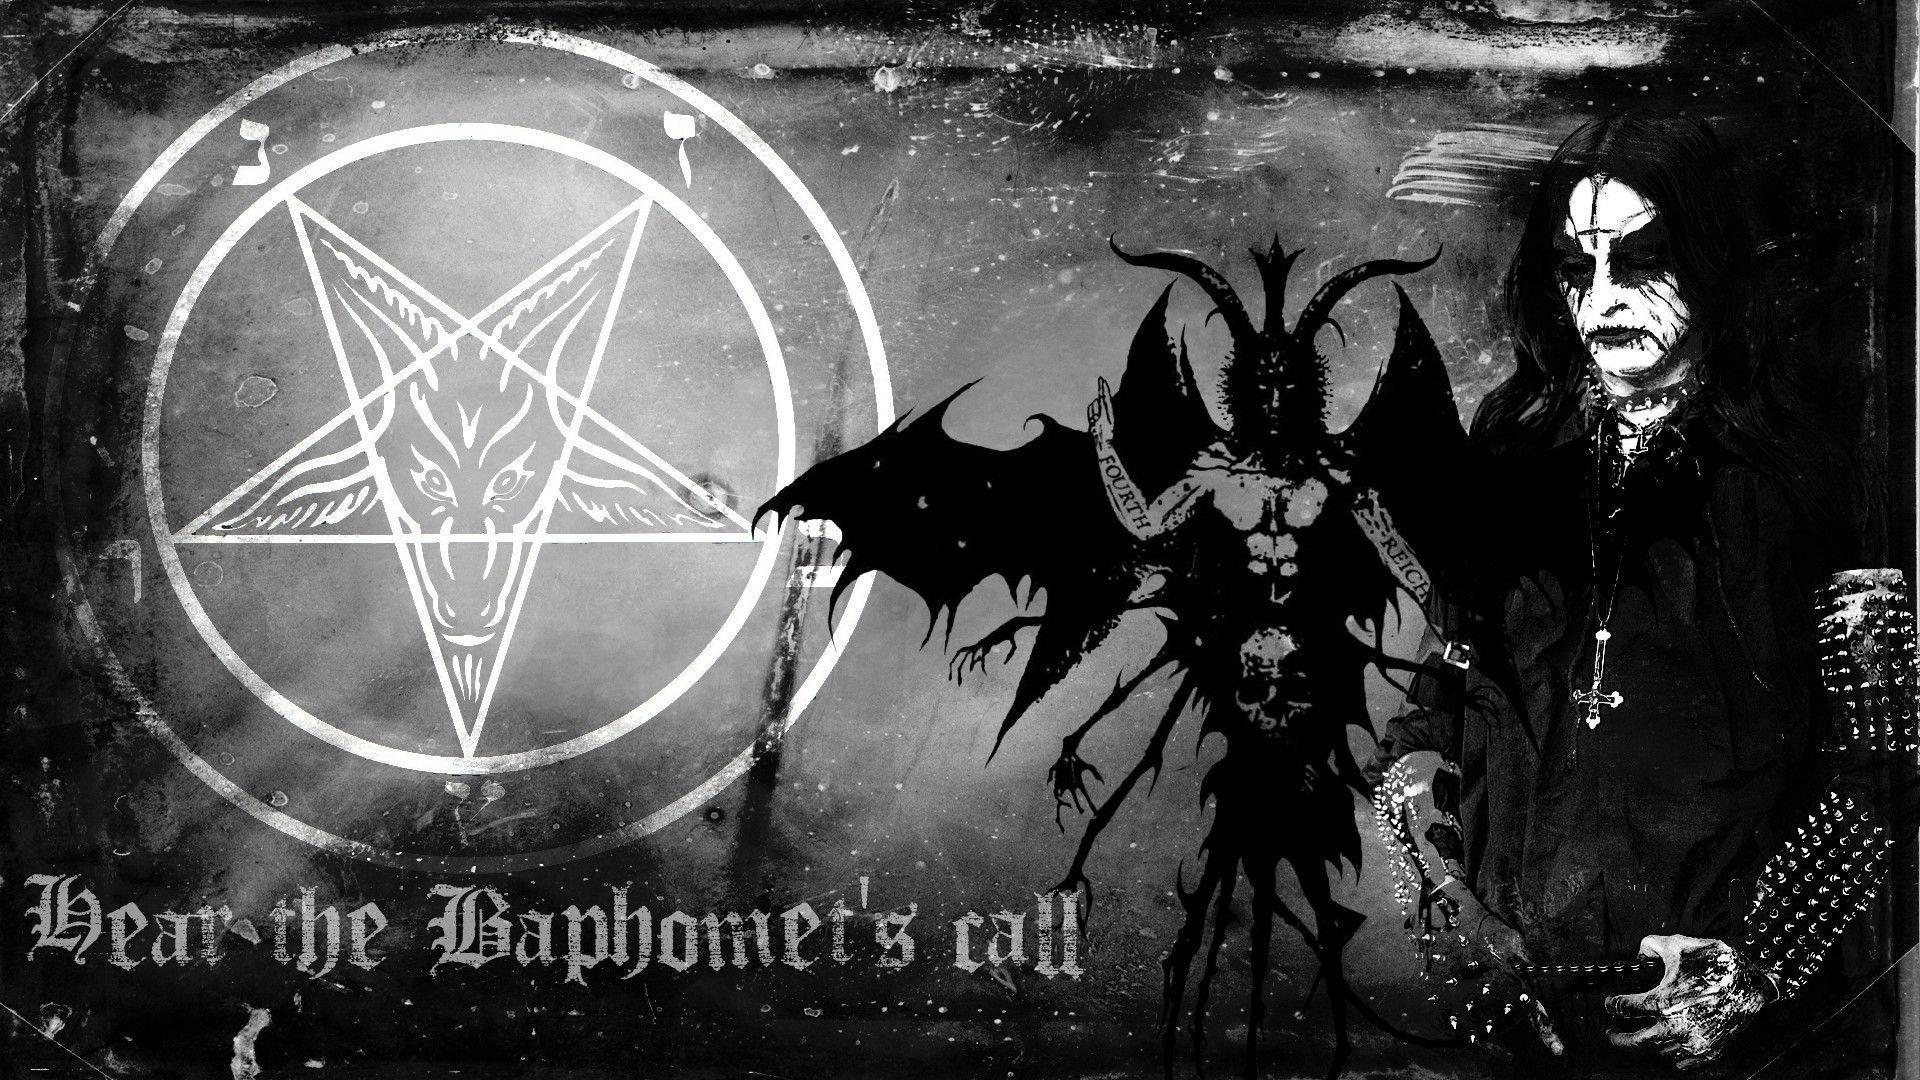 Download Gambar Wallpaper Hd Black Metal terbaru 2020